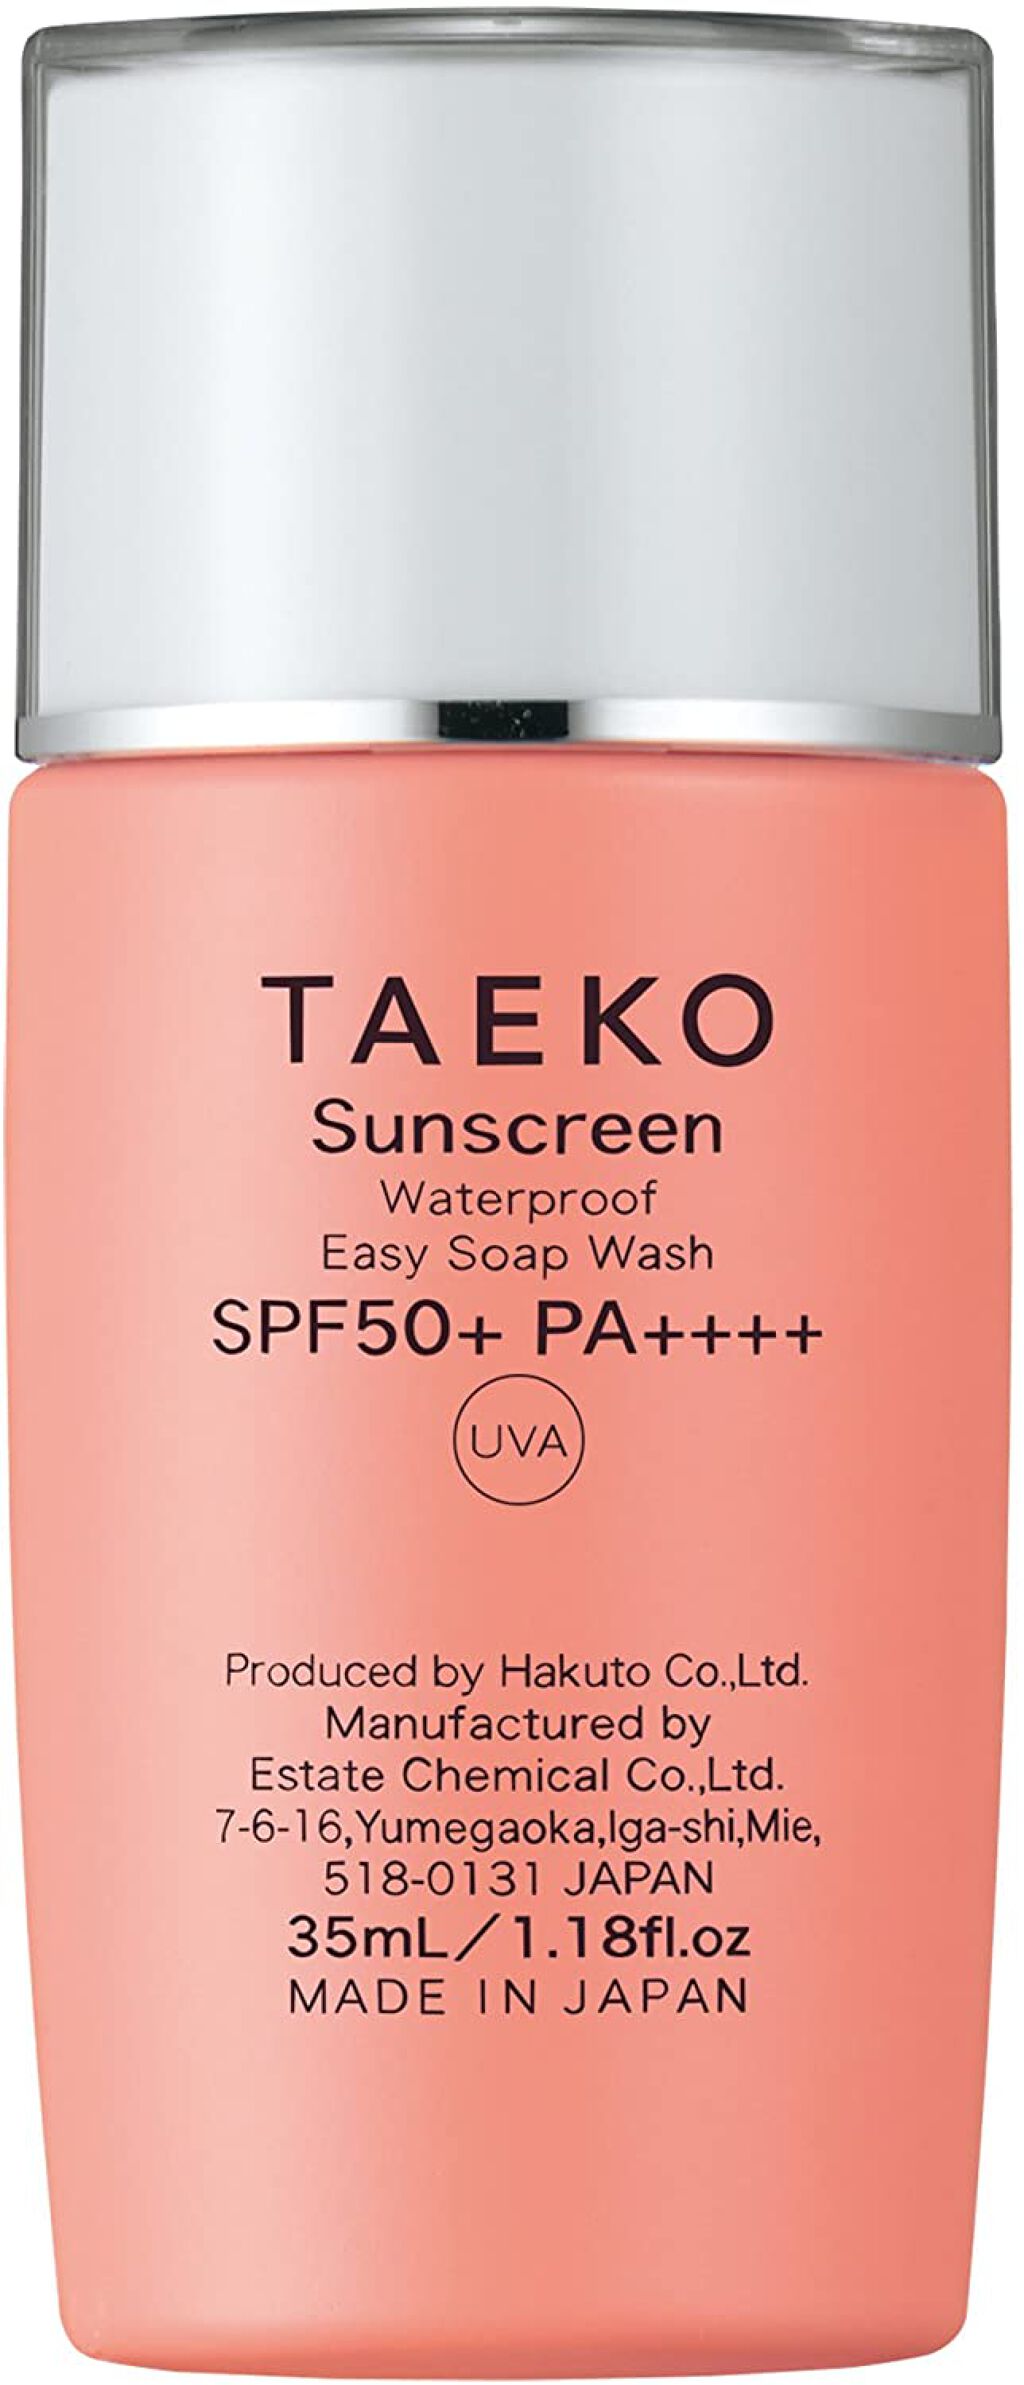 買物代行 TAEKO セラジュニール セット - スキンケア・基礎化粧品